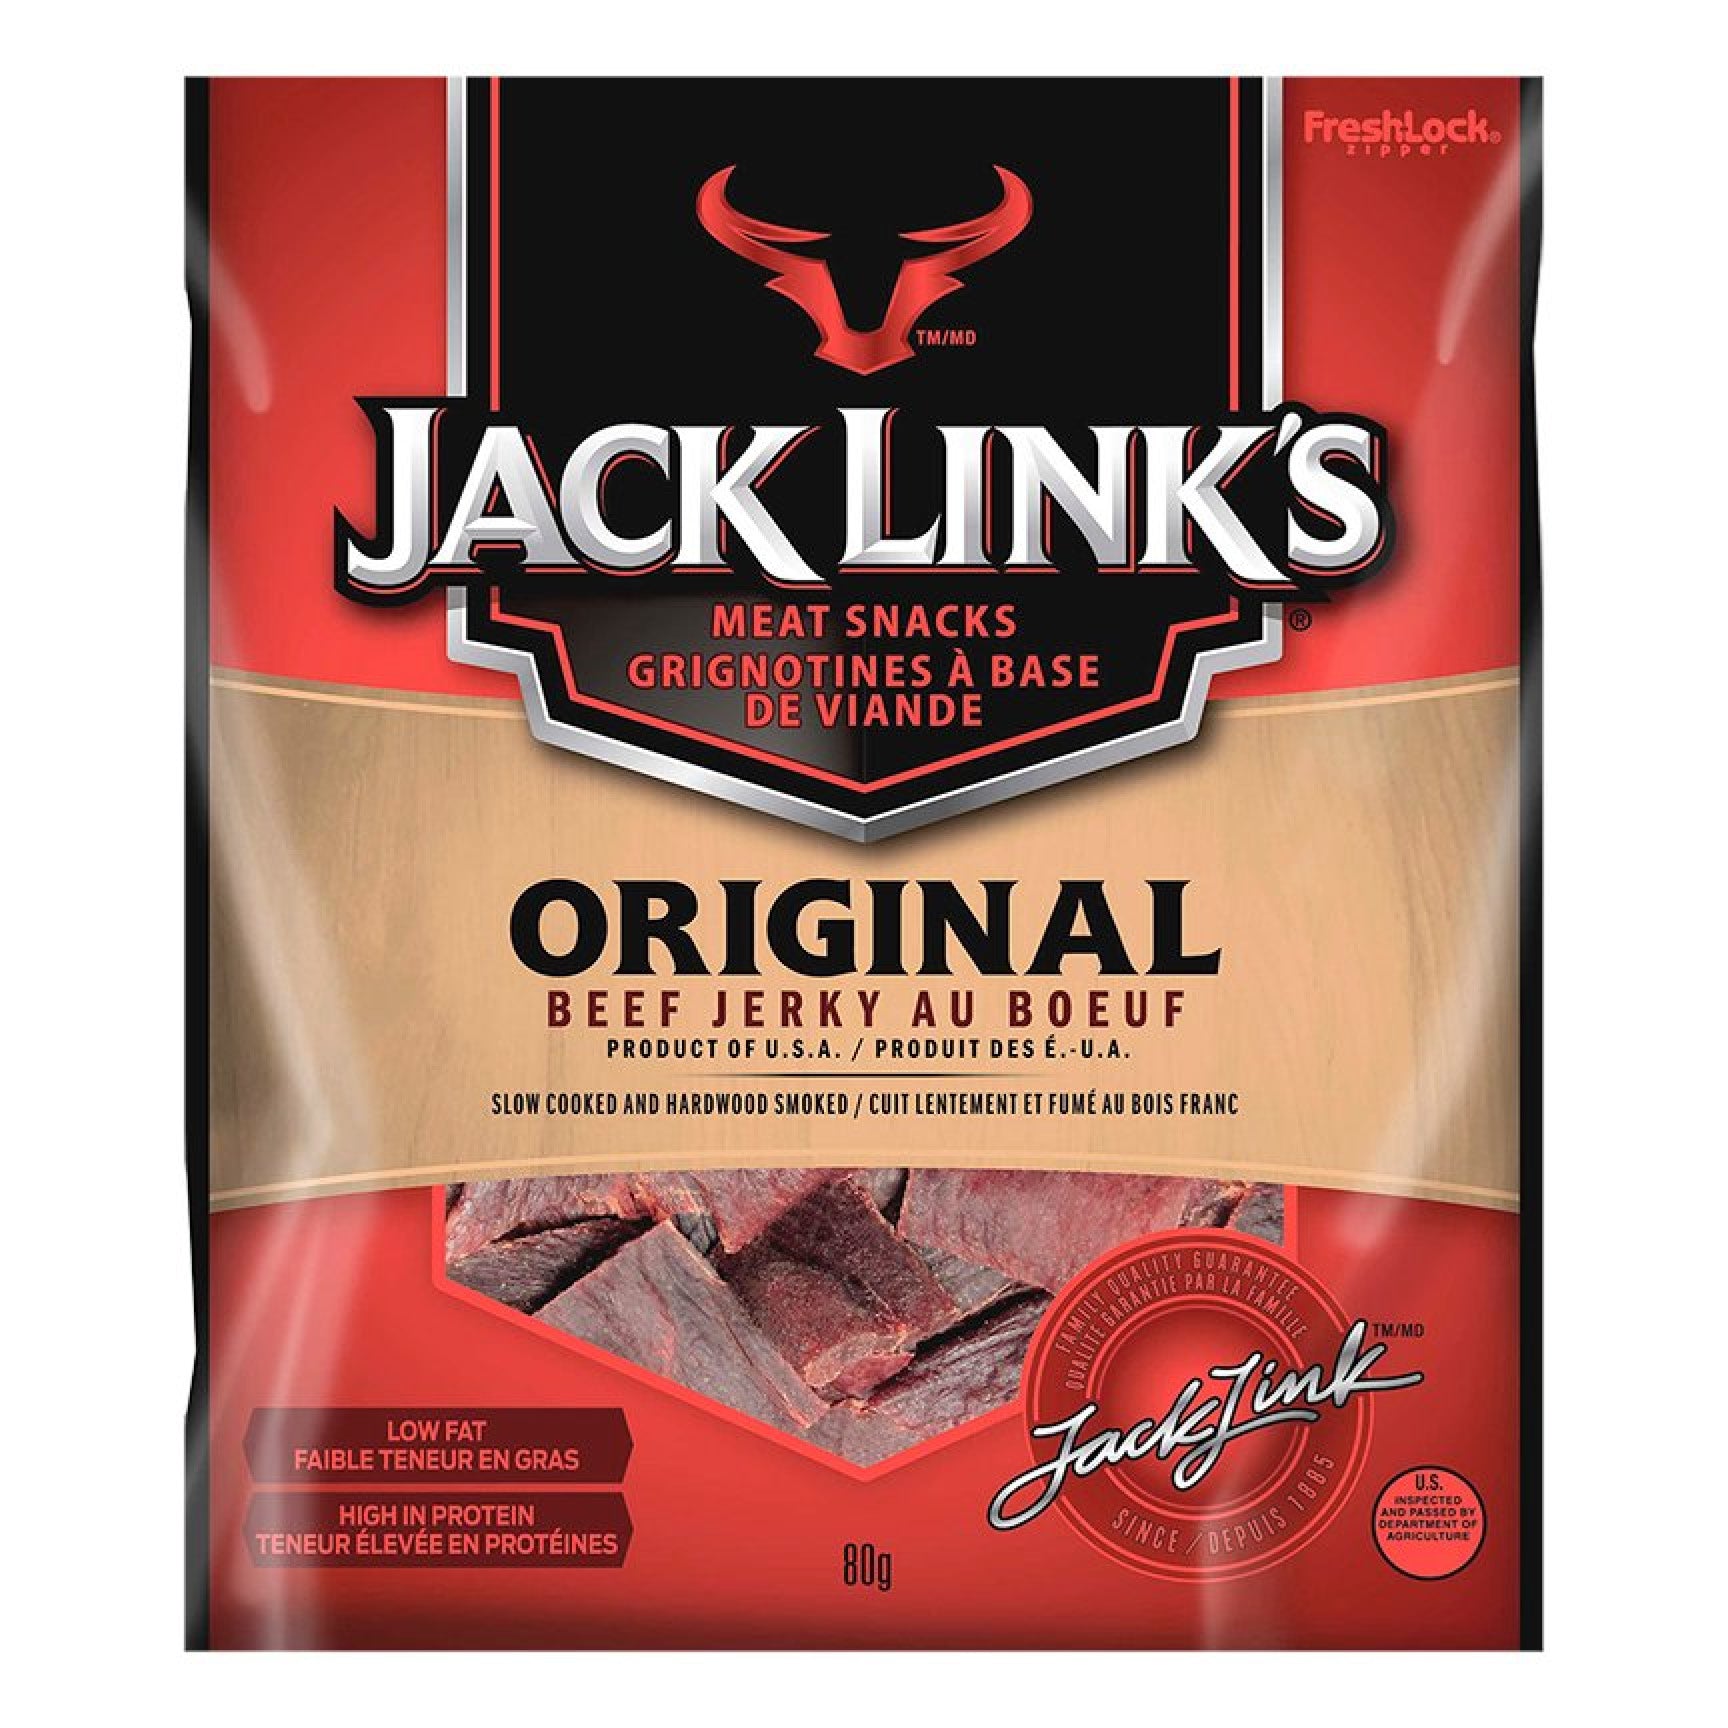 Jack Link's Original Beef Jerky, 80g